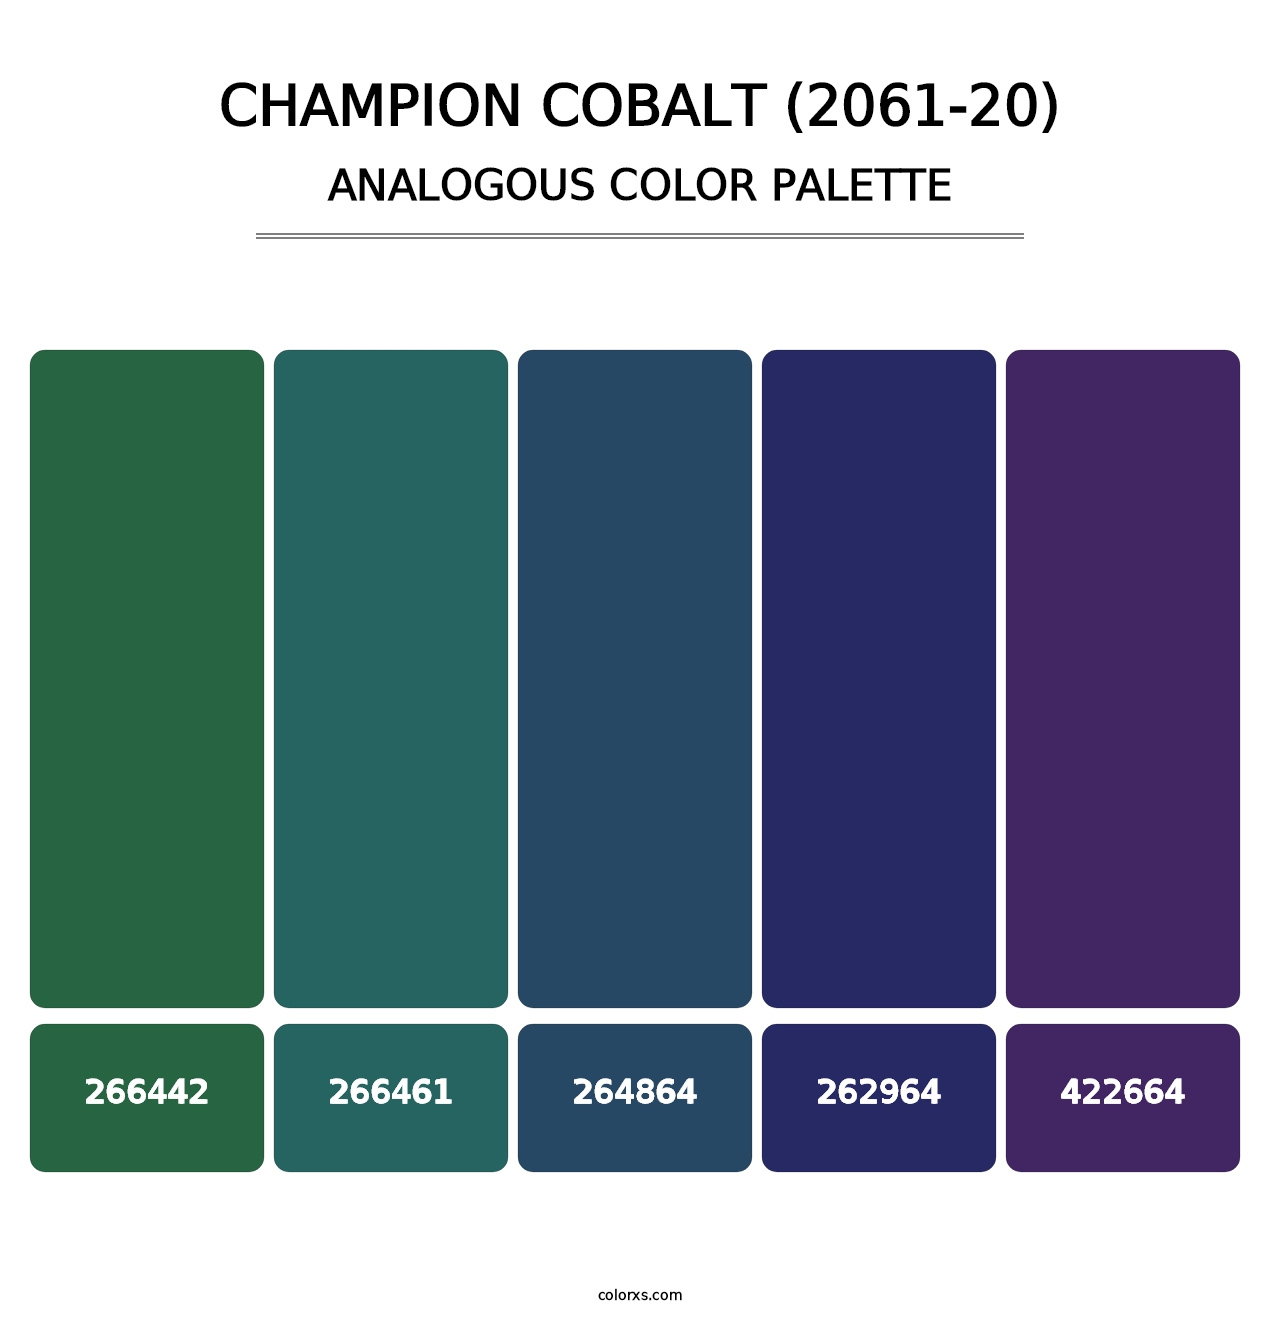 Champion Cobalt (2061-20) - Analogous Color Palette